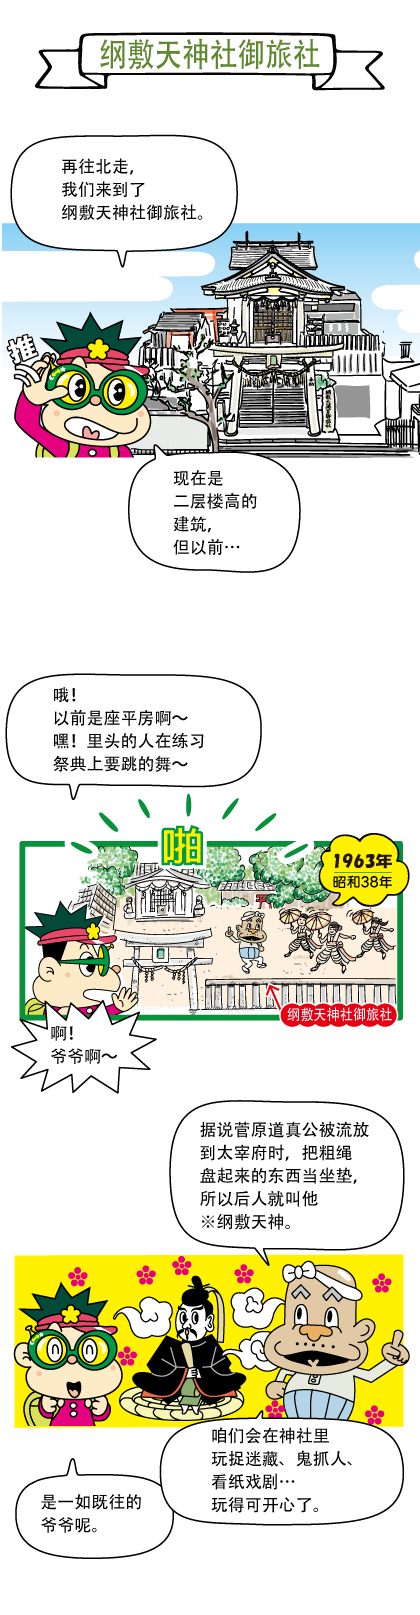 关于纲敷天神社 御旅社历史的漫画 1